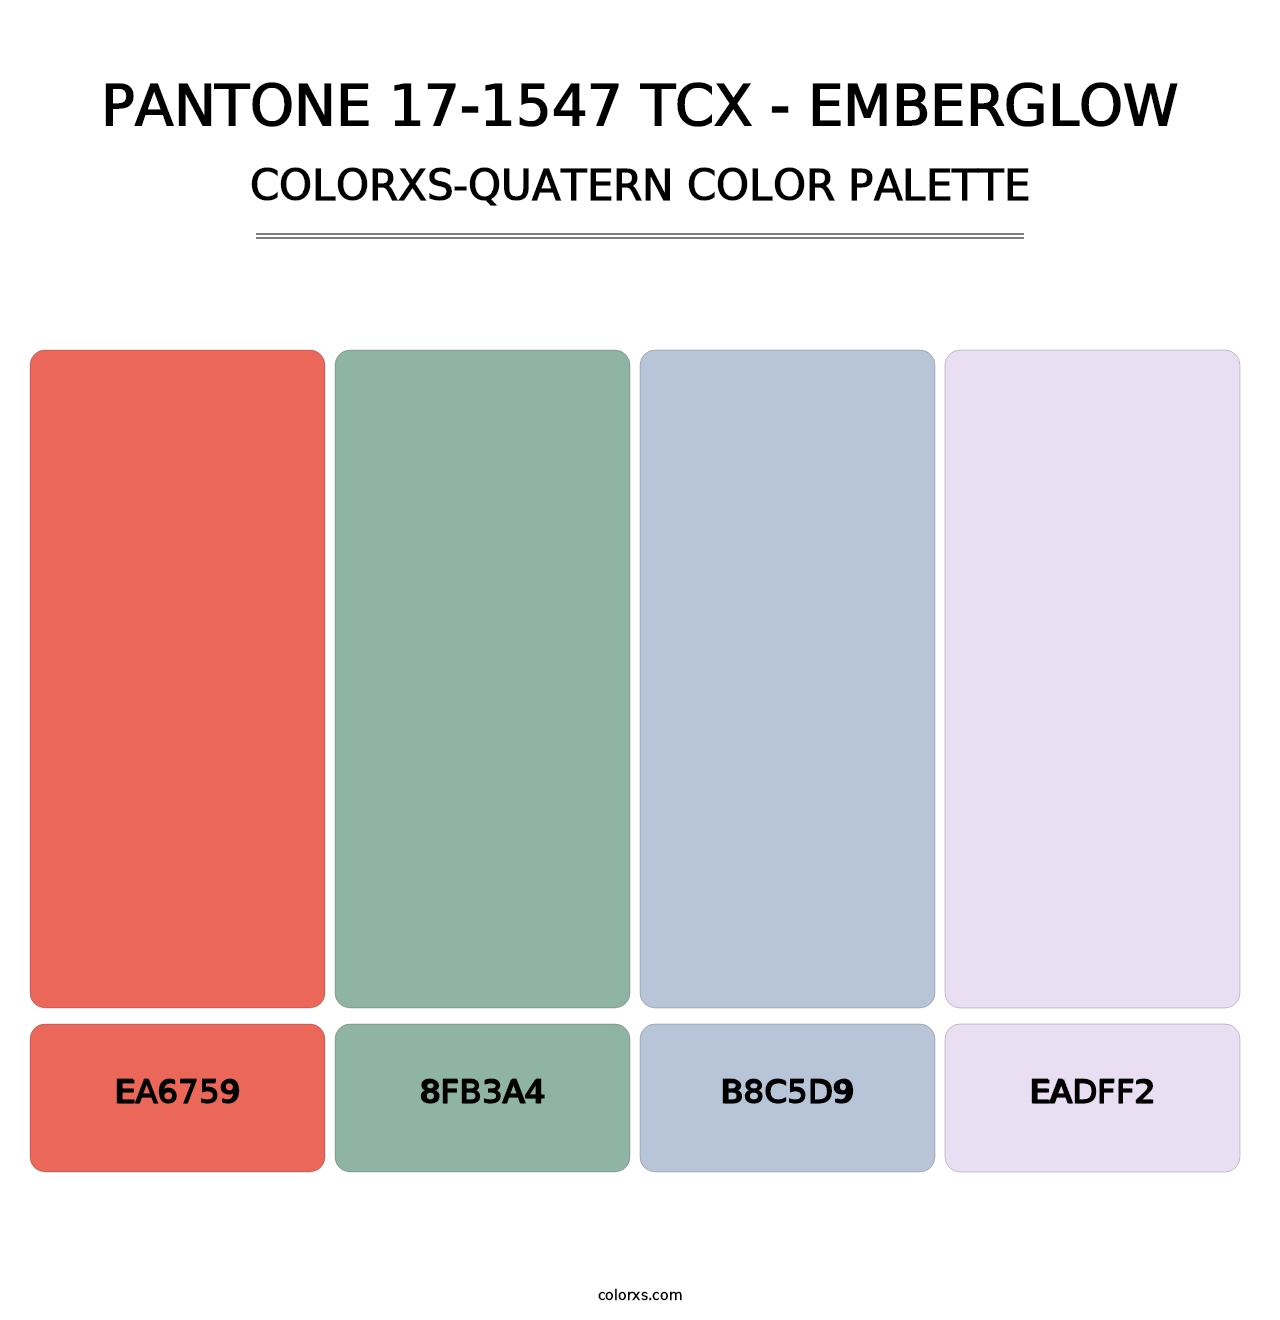 PANTONE 17-1547 TCX - Emberglow - Colorxs Quatern Palette